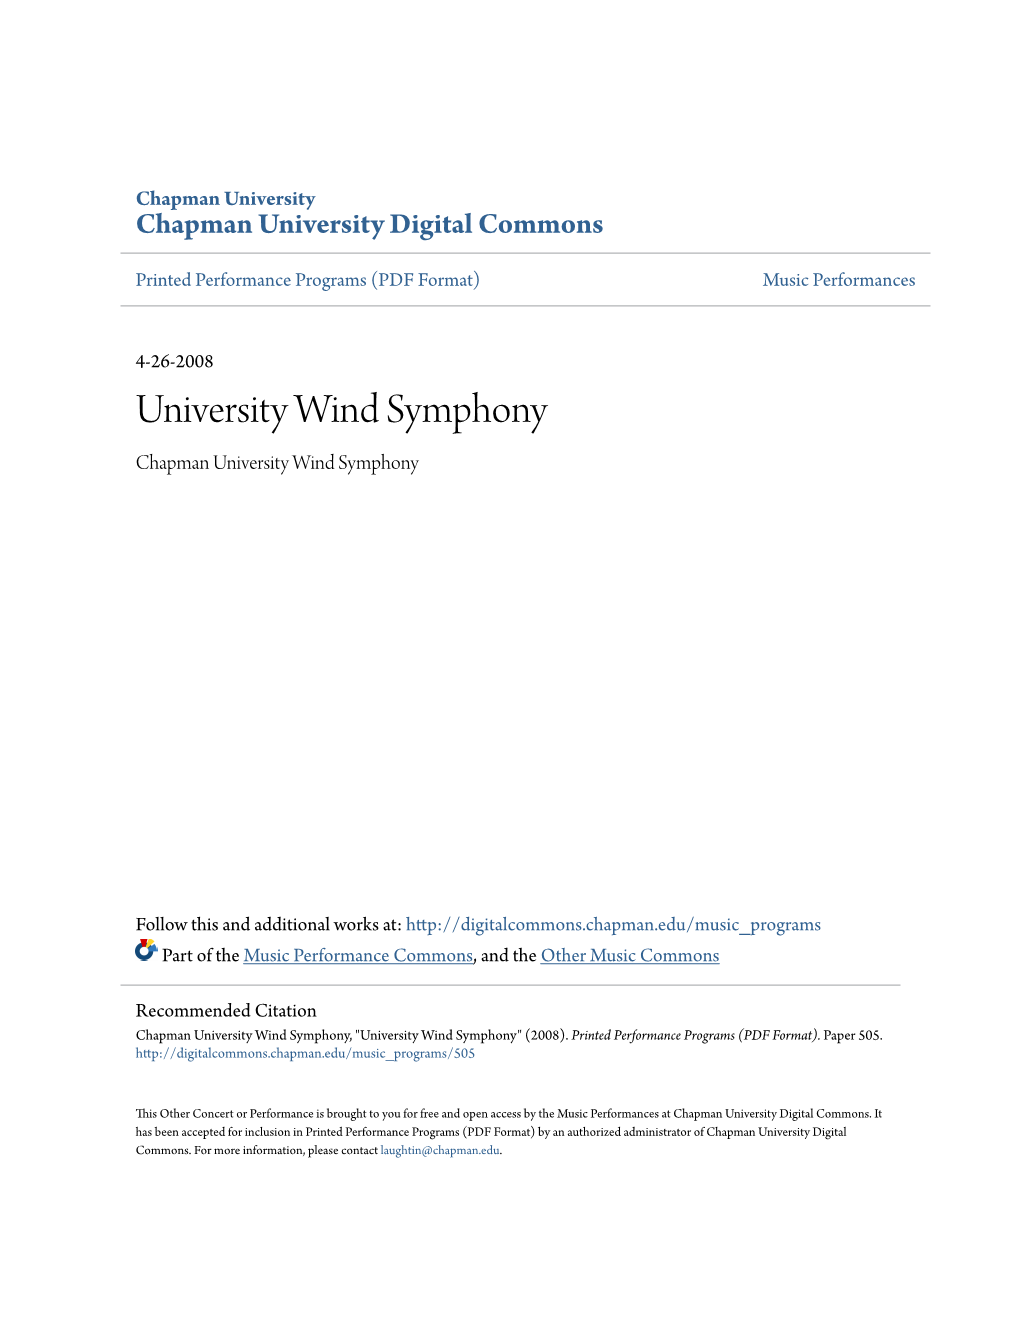 University Wind Symphony Chapman University Wind Symphony